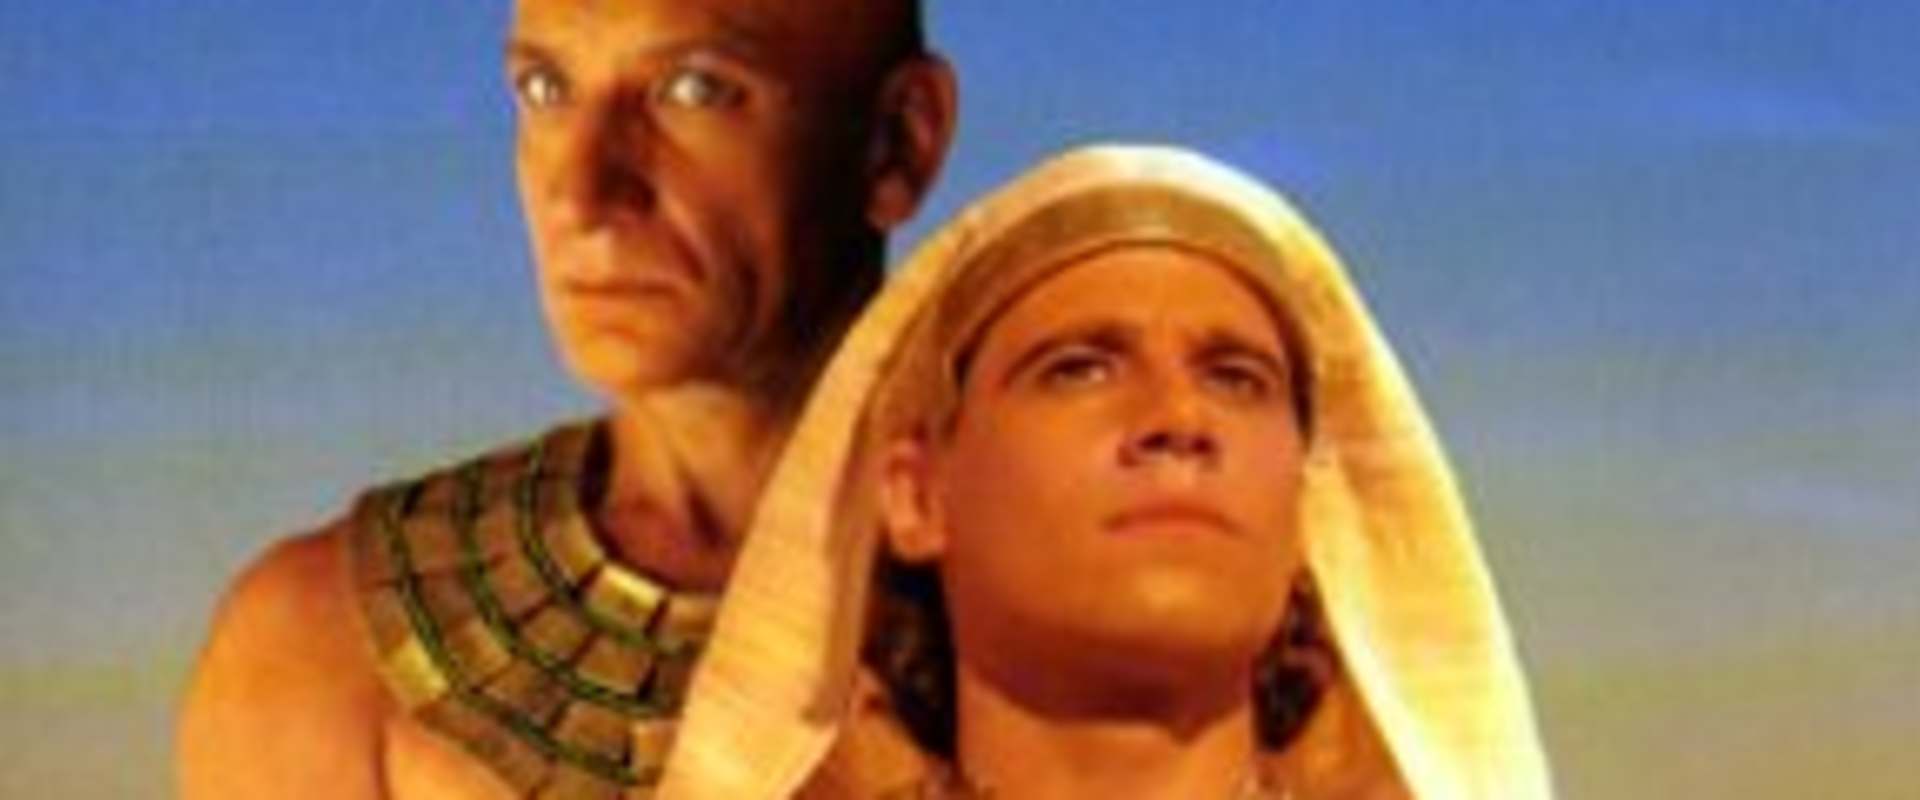 Joseph in Egypt background 2